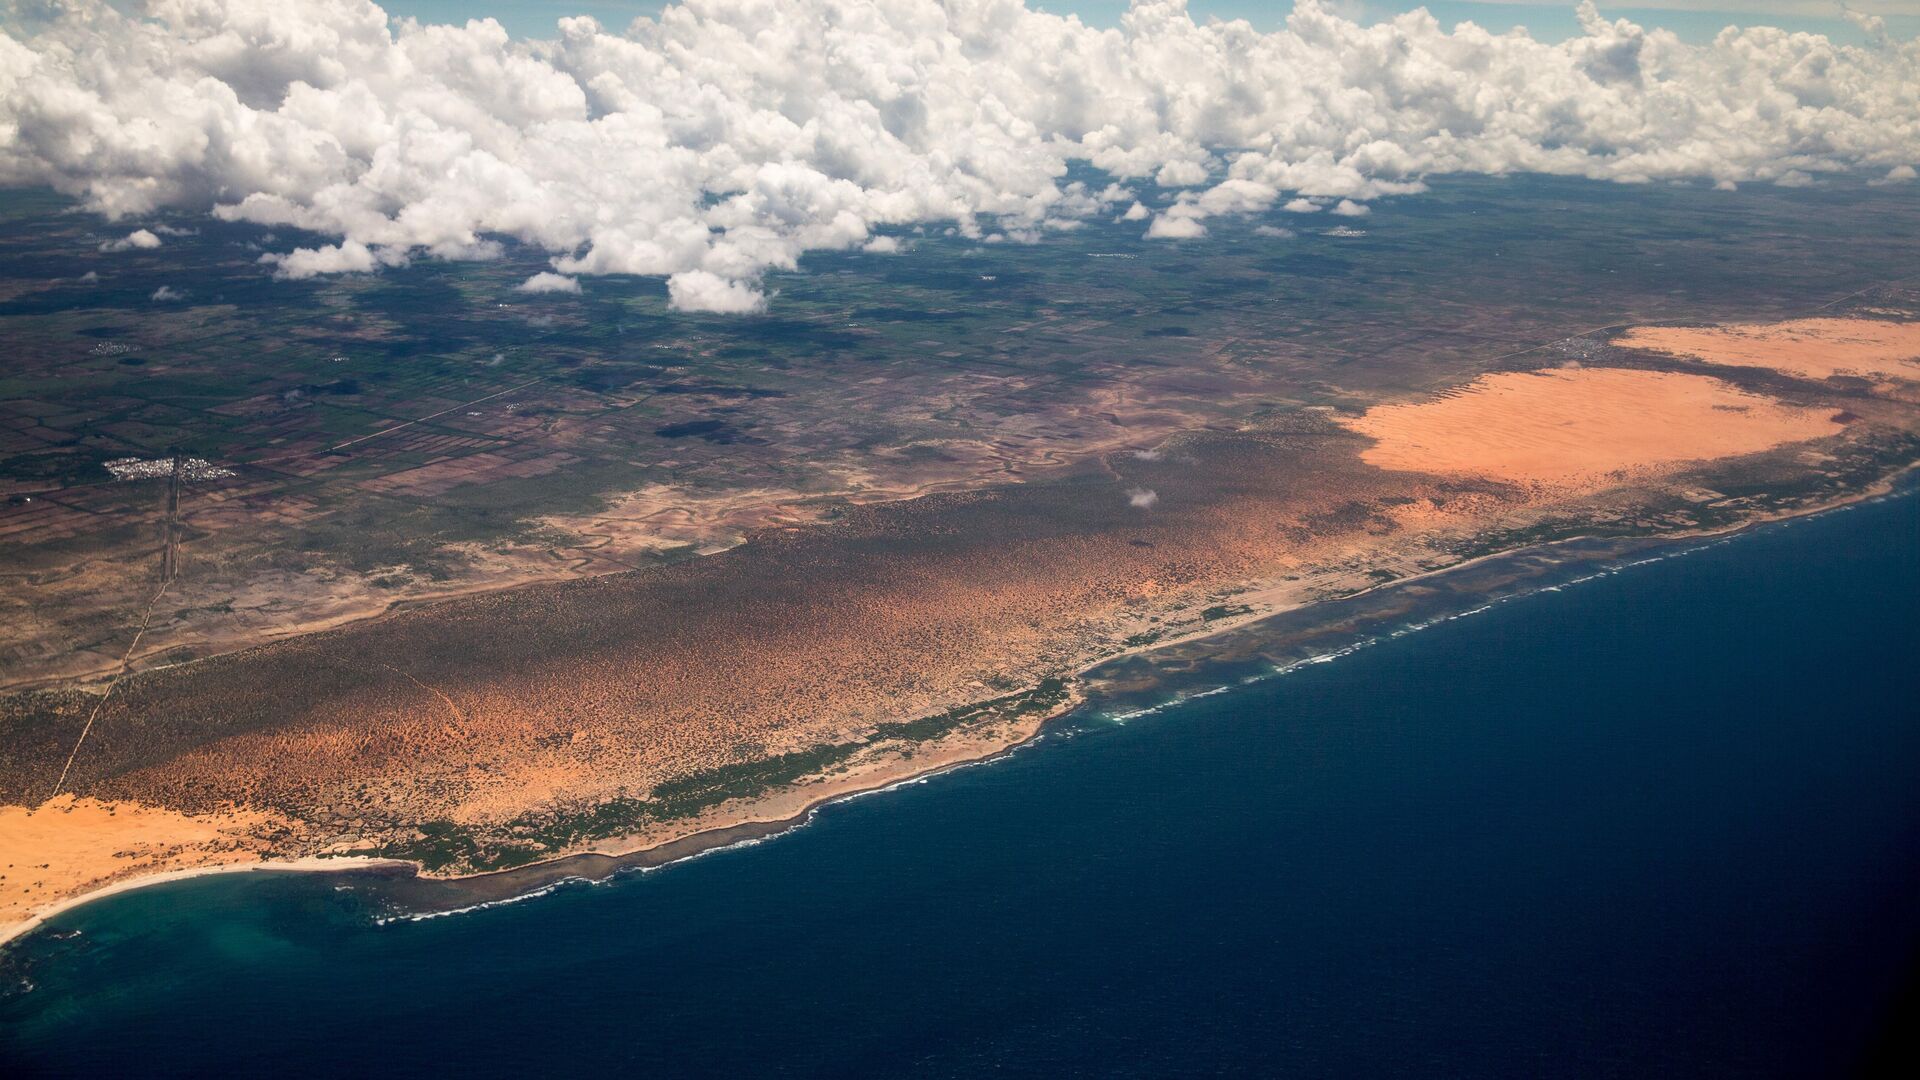 La côte somalienne vue depuis un avion (archive photo) - Sputnik Afrique, 1920, 24.10.2021